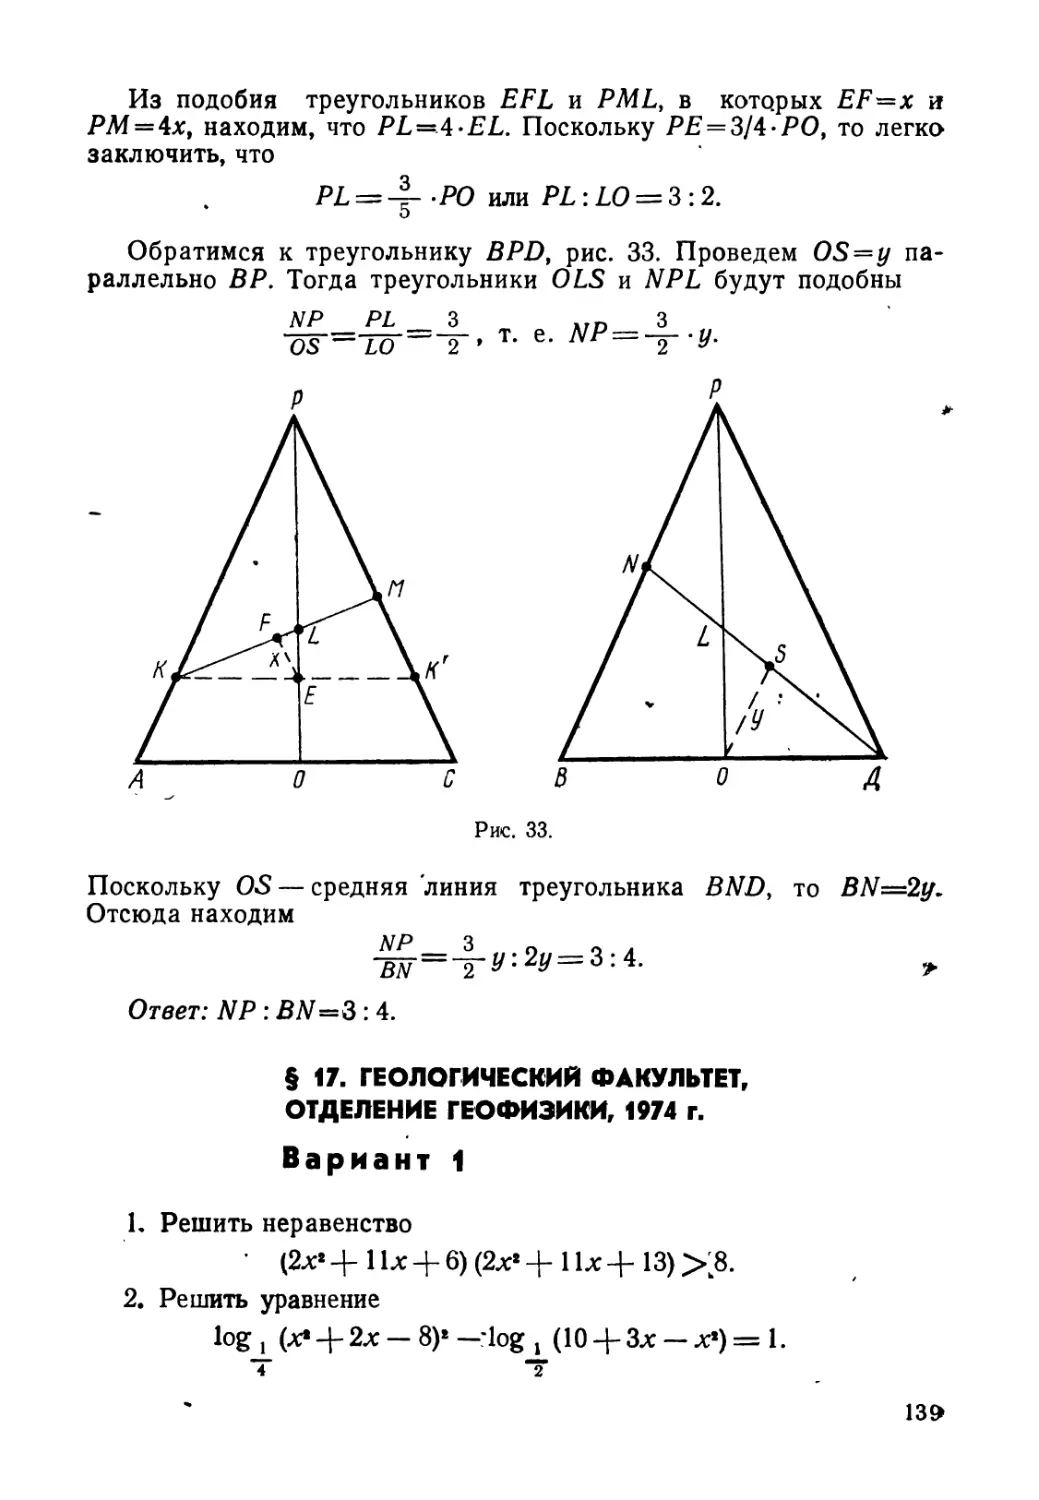 § 17. Геологический факультет, отделение геофизики, 1974 г